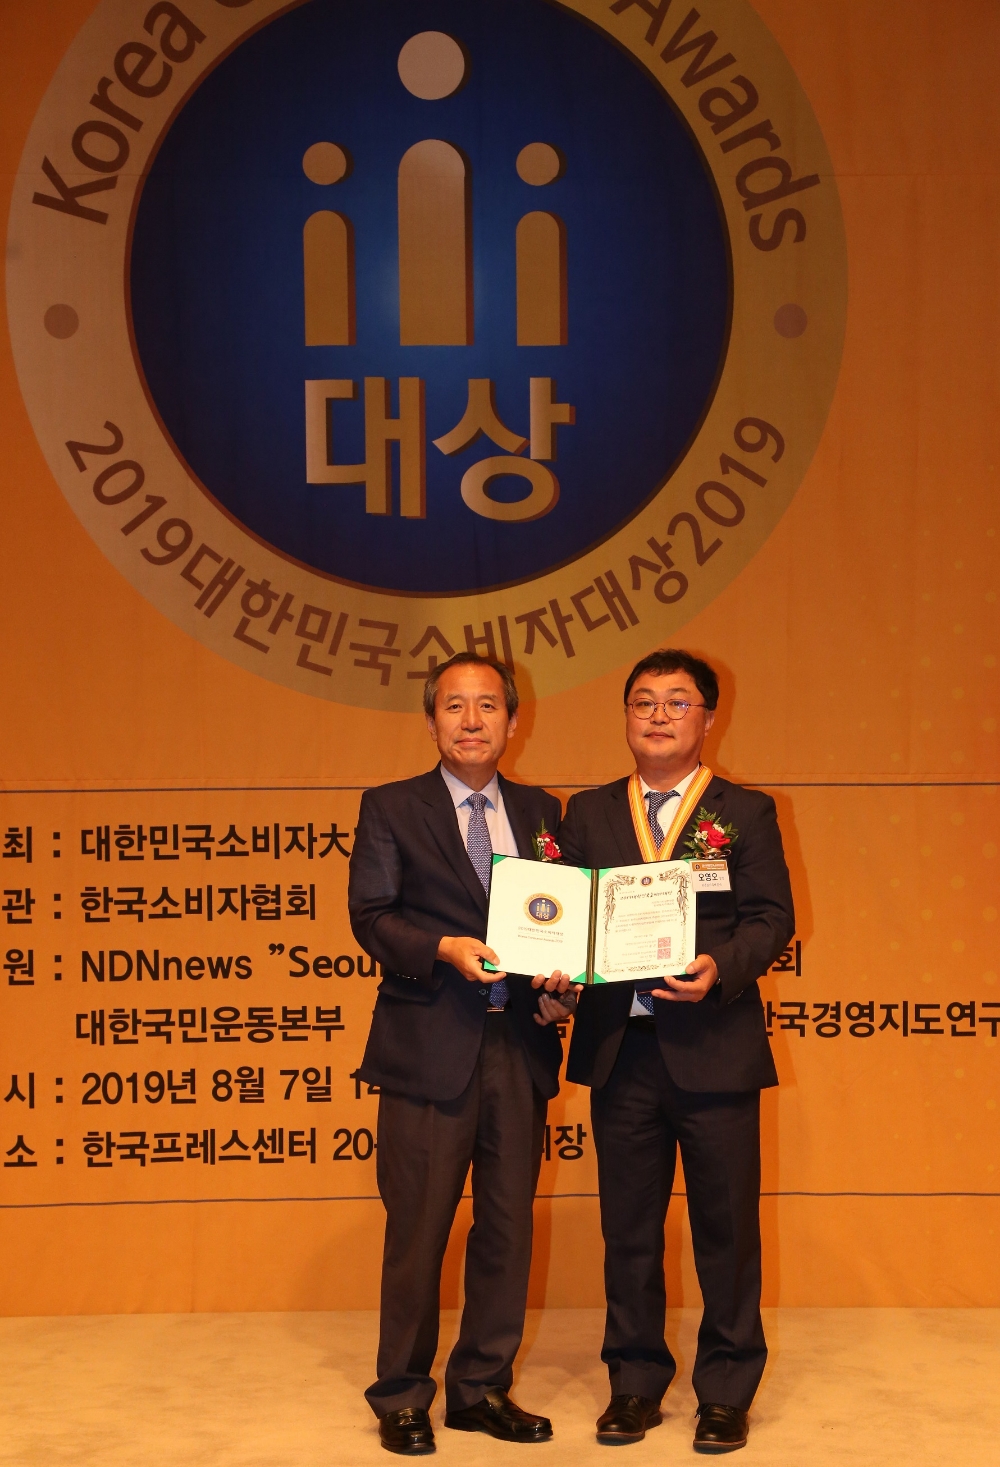 오영오 LH 미래혁신실장(오른쪽)과 김종운 주한대사문화친선협회 회장(왼쪽)이 기념사진을 촬영하고 있다.(사진=LH)